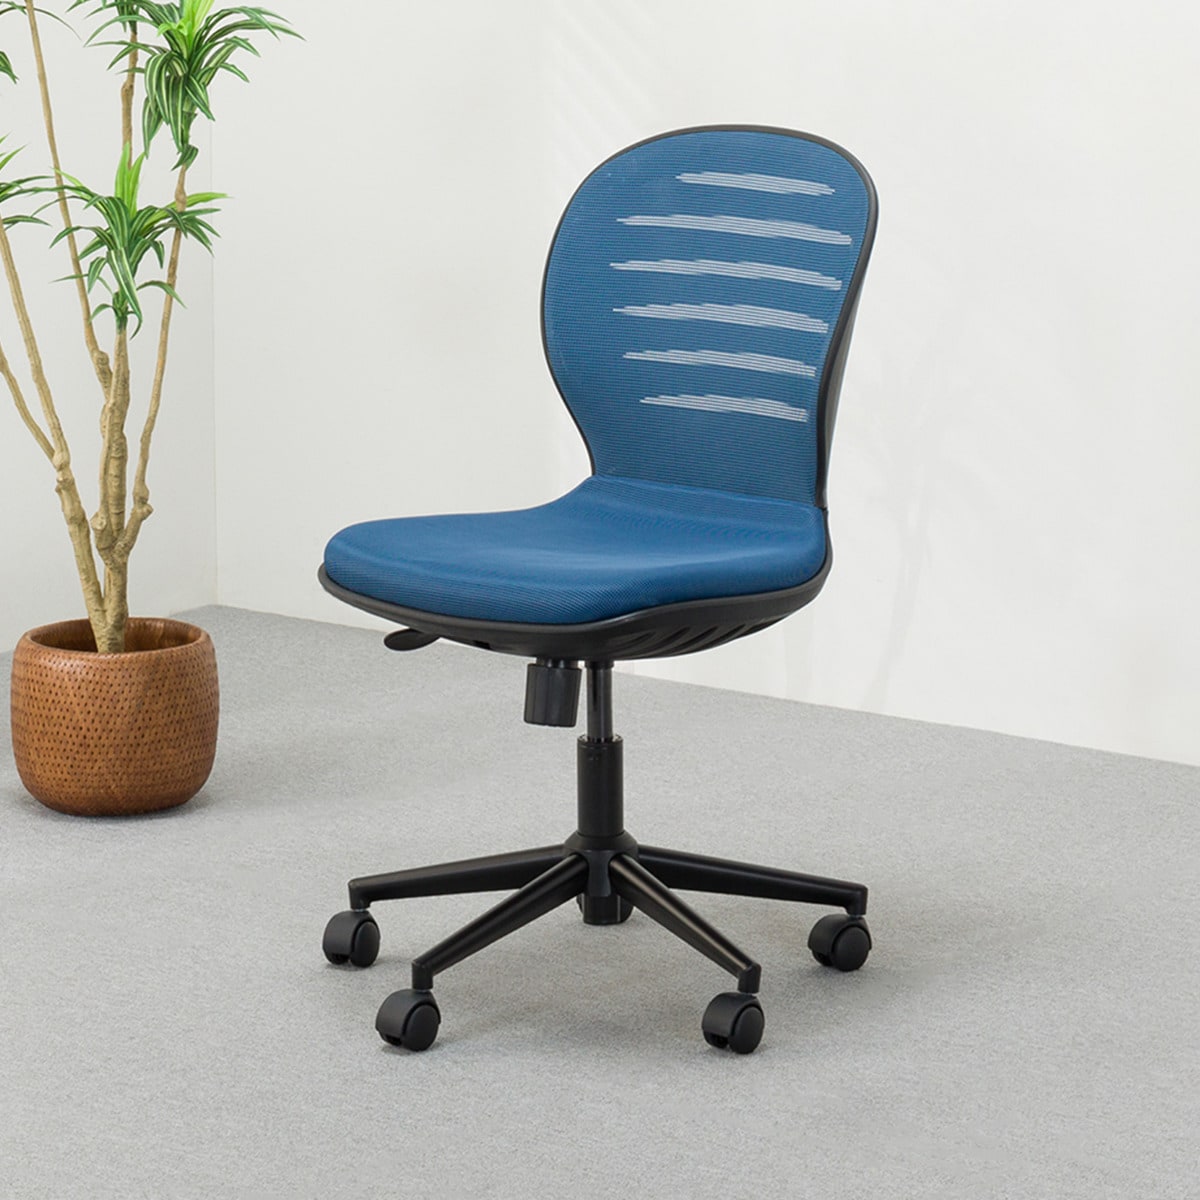 ニトリの[幅57cm]オフィスチェア(OAチェア MS7003H BL)   【1年保証】(チェア・椅子)